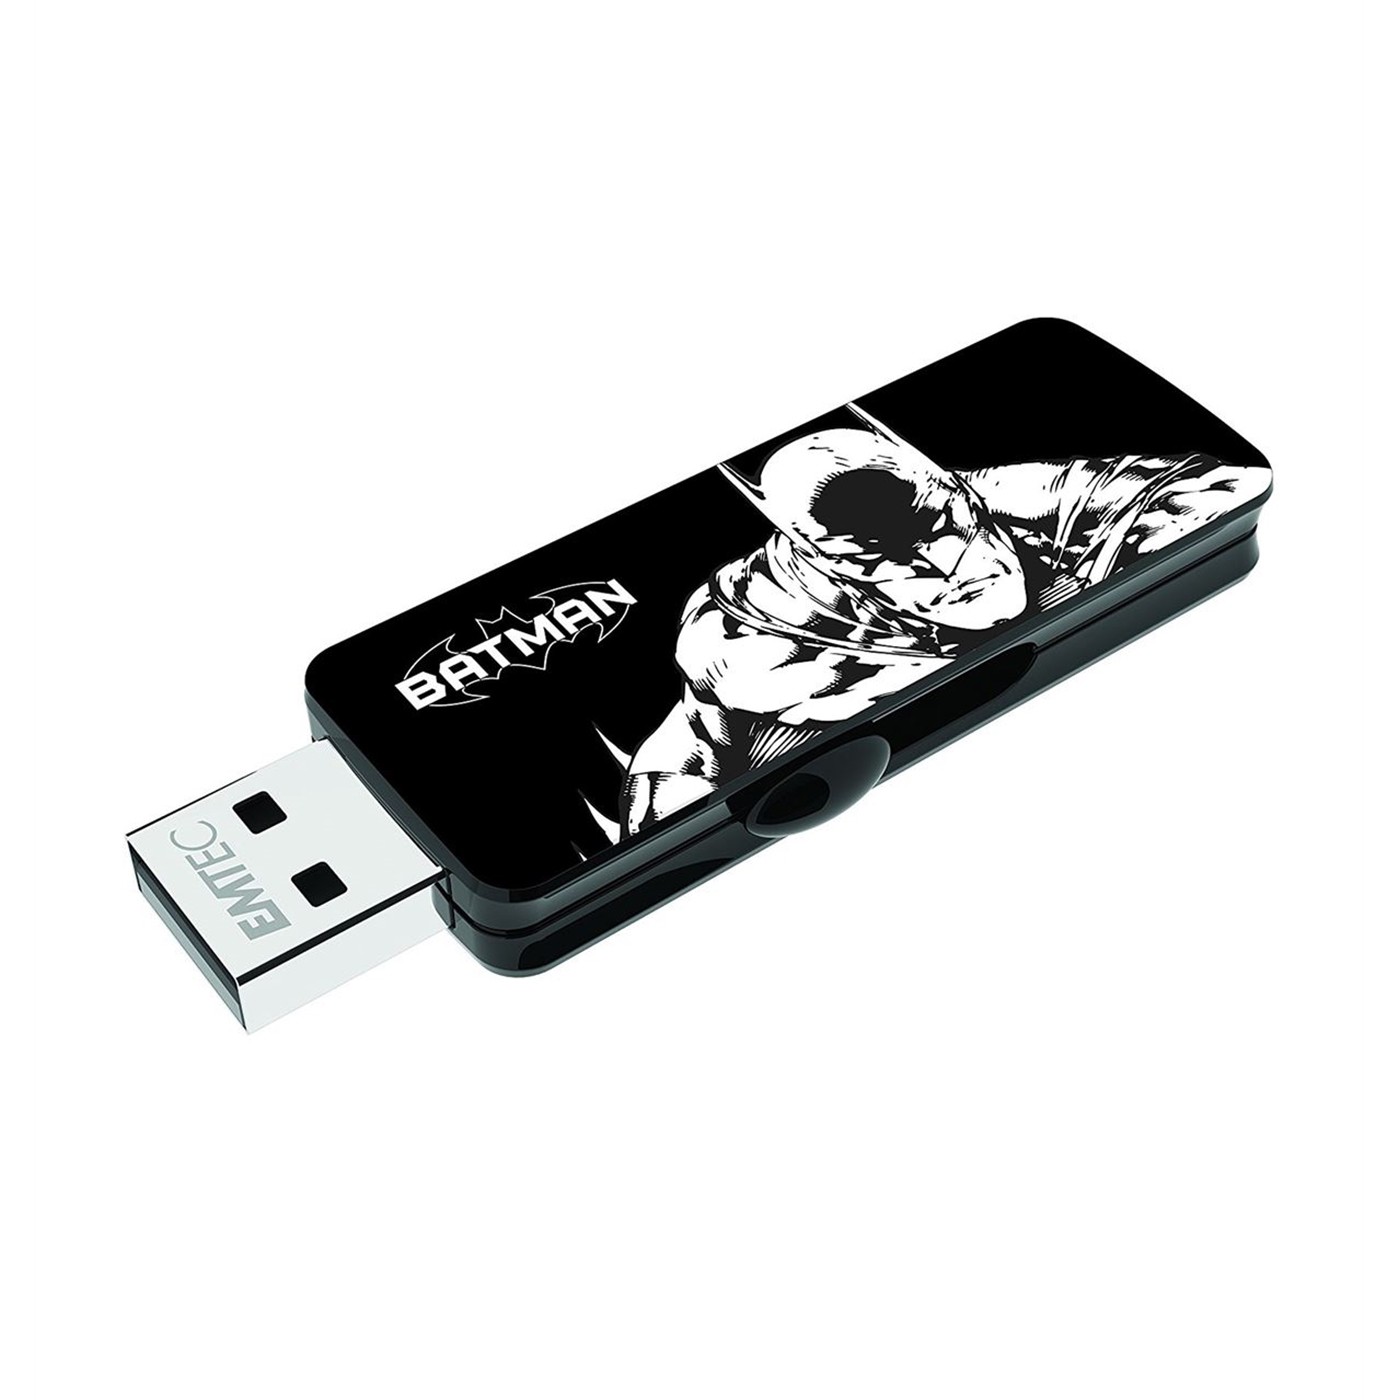 Batman Image 8GB USB2 Drive